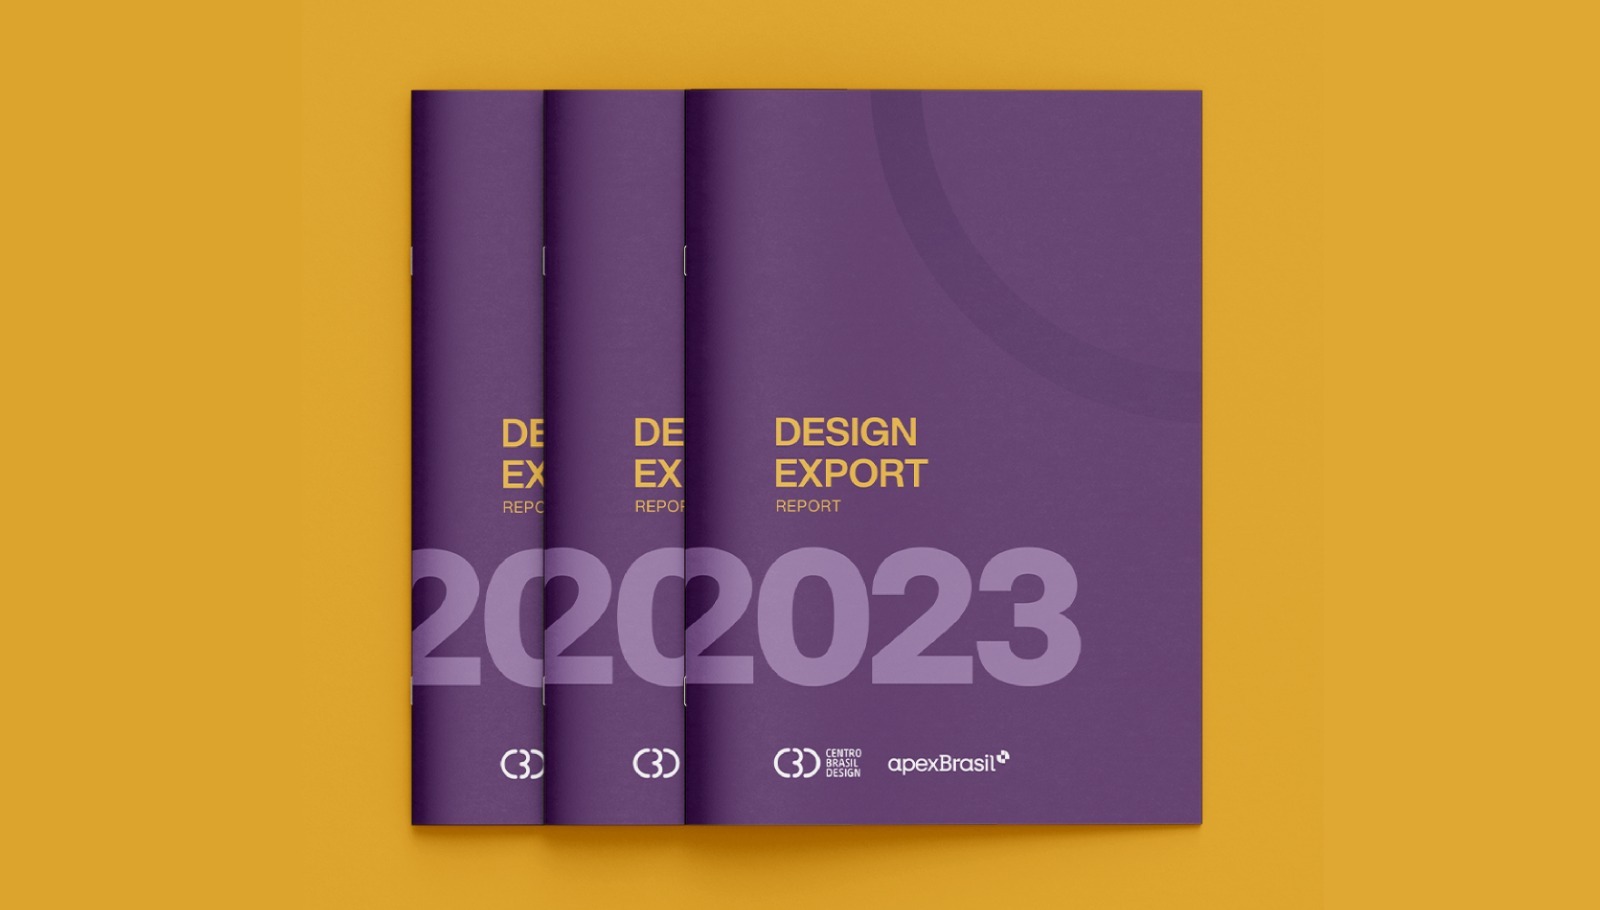 Design Export: 4ª edição apoiou 60 empresas brasileiras